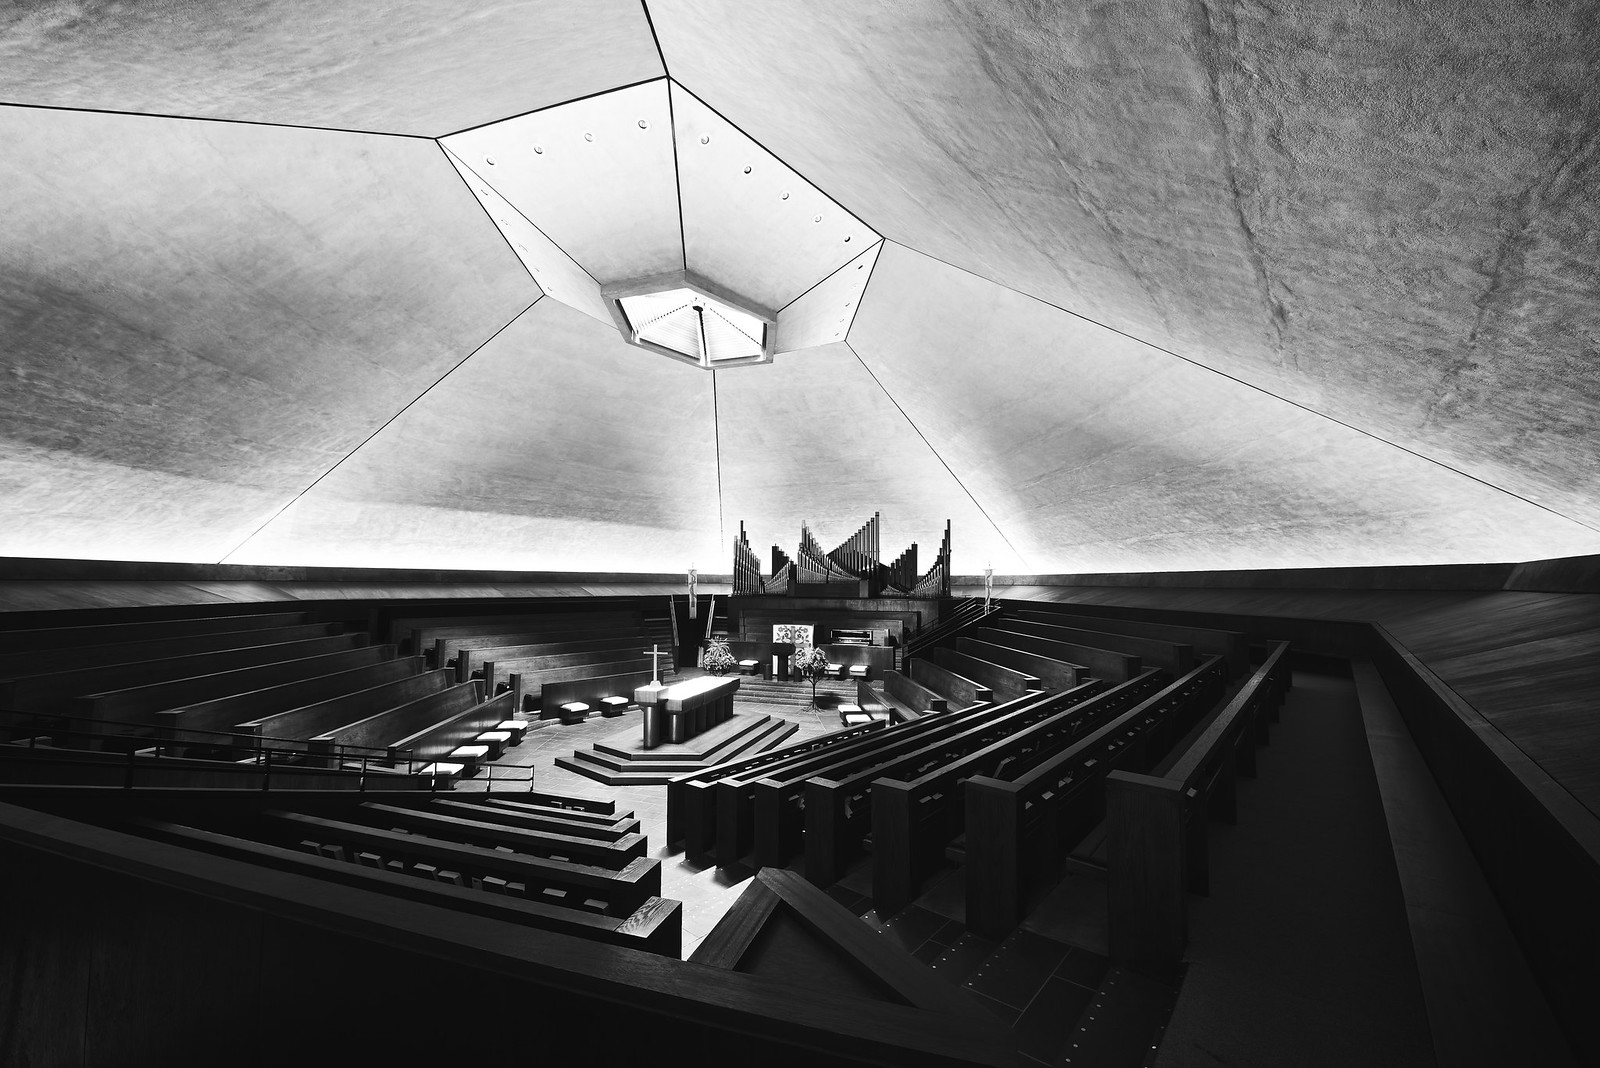 Eero Saarinen’s North Christian Church